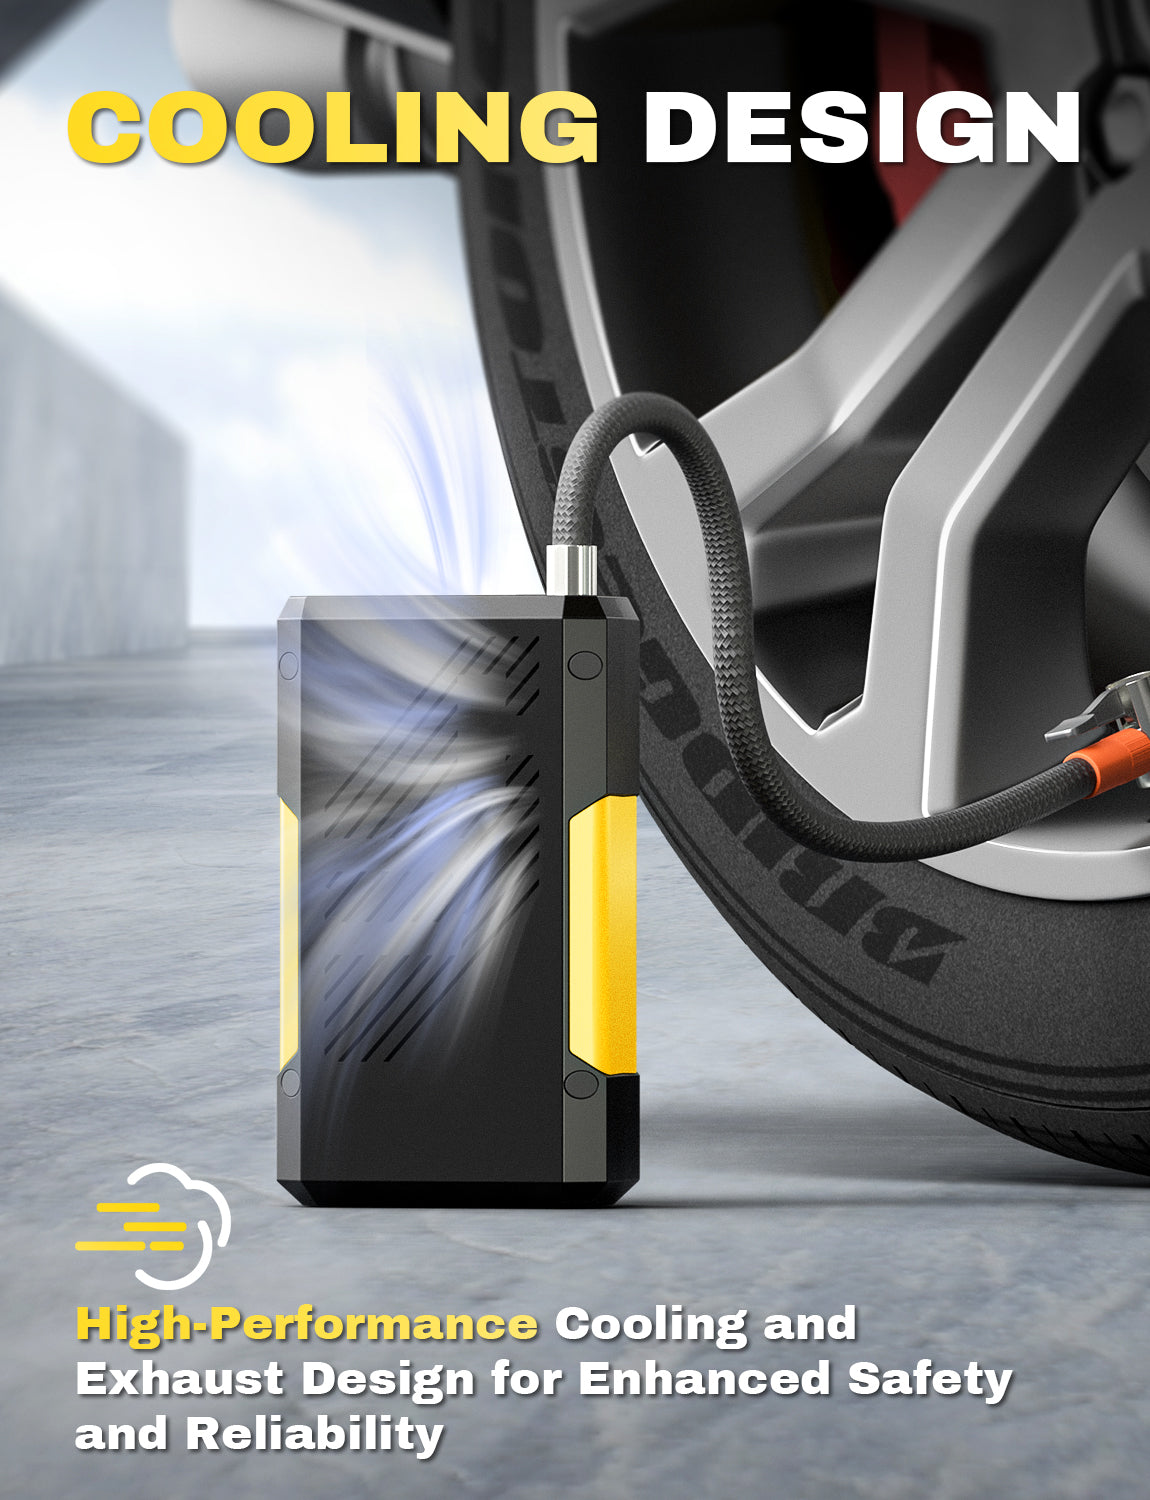 Tire Inflators - Portable Air Compressor & Digital Tire Inflator